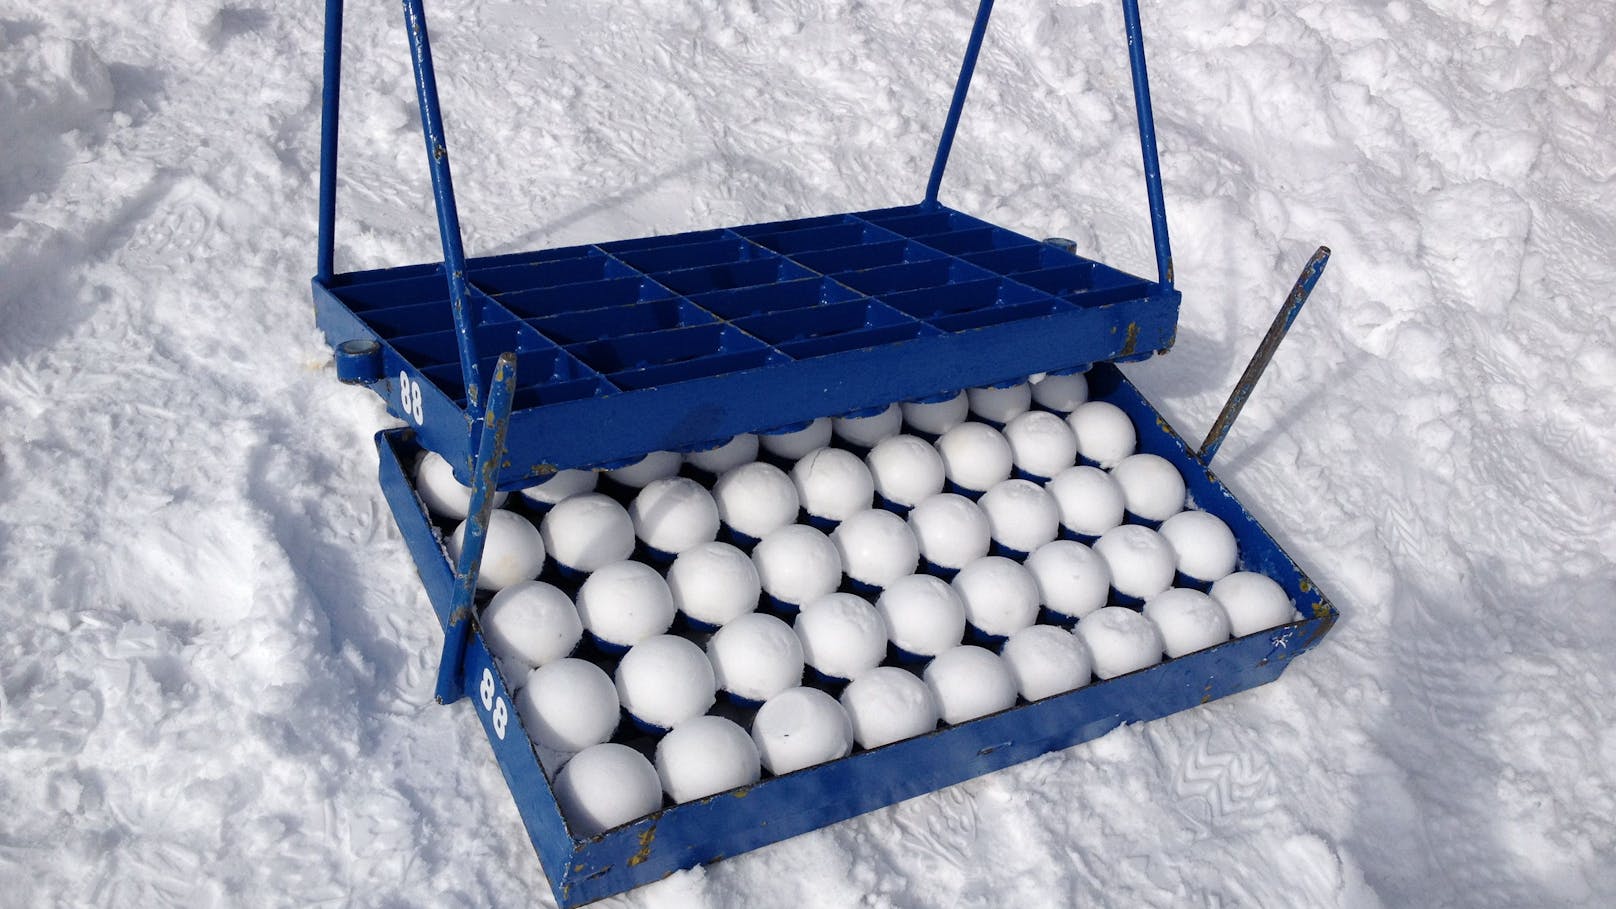 Jedes Team erhält 90 genormte Schneebälle, die mit einer speziellen Maschine aus Finnland hergestellt werden.